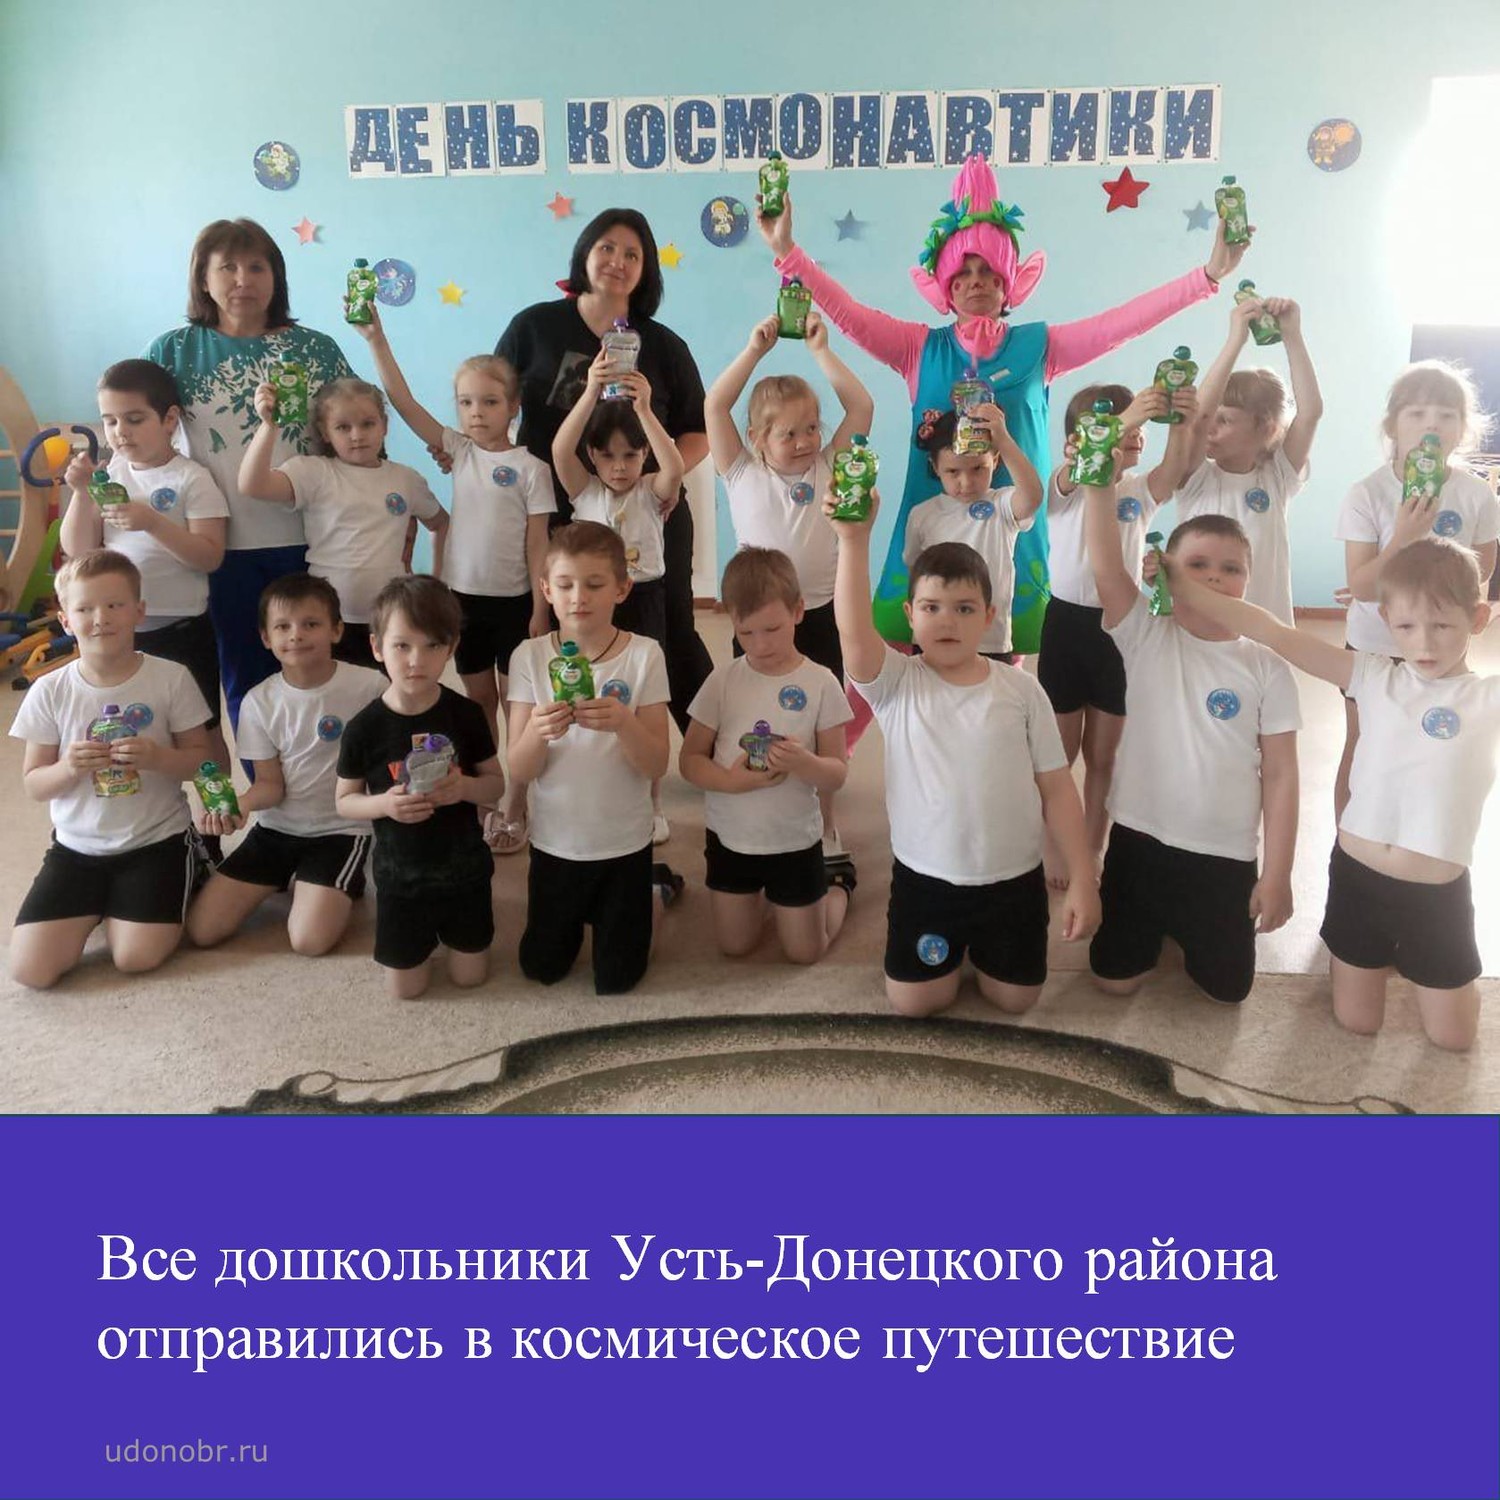 Все дошкольники Усть-Донецкого района отправились в космическое путешествие